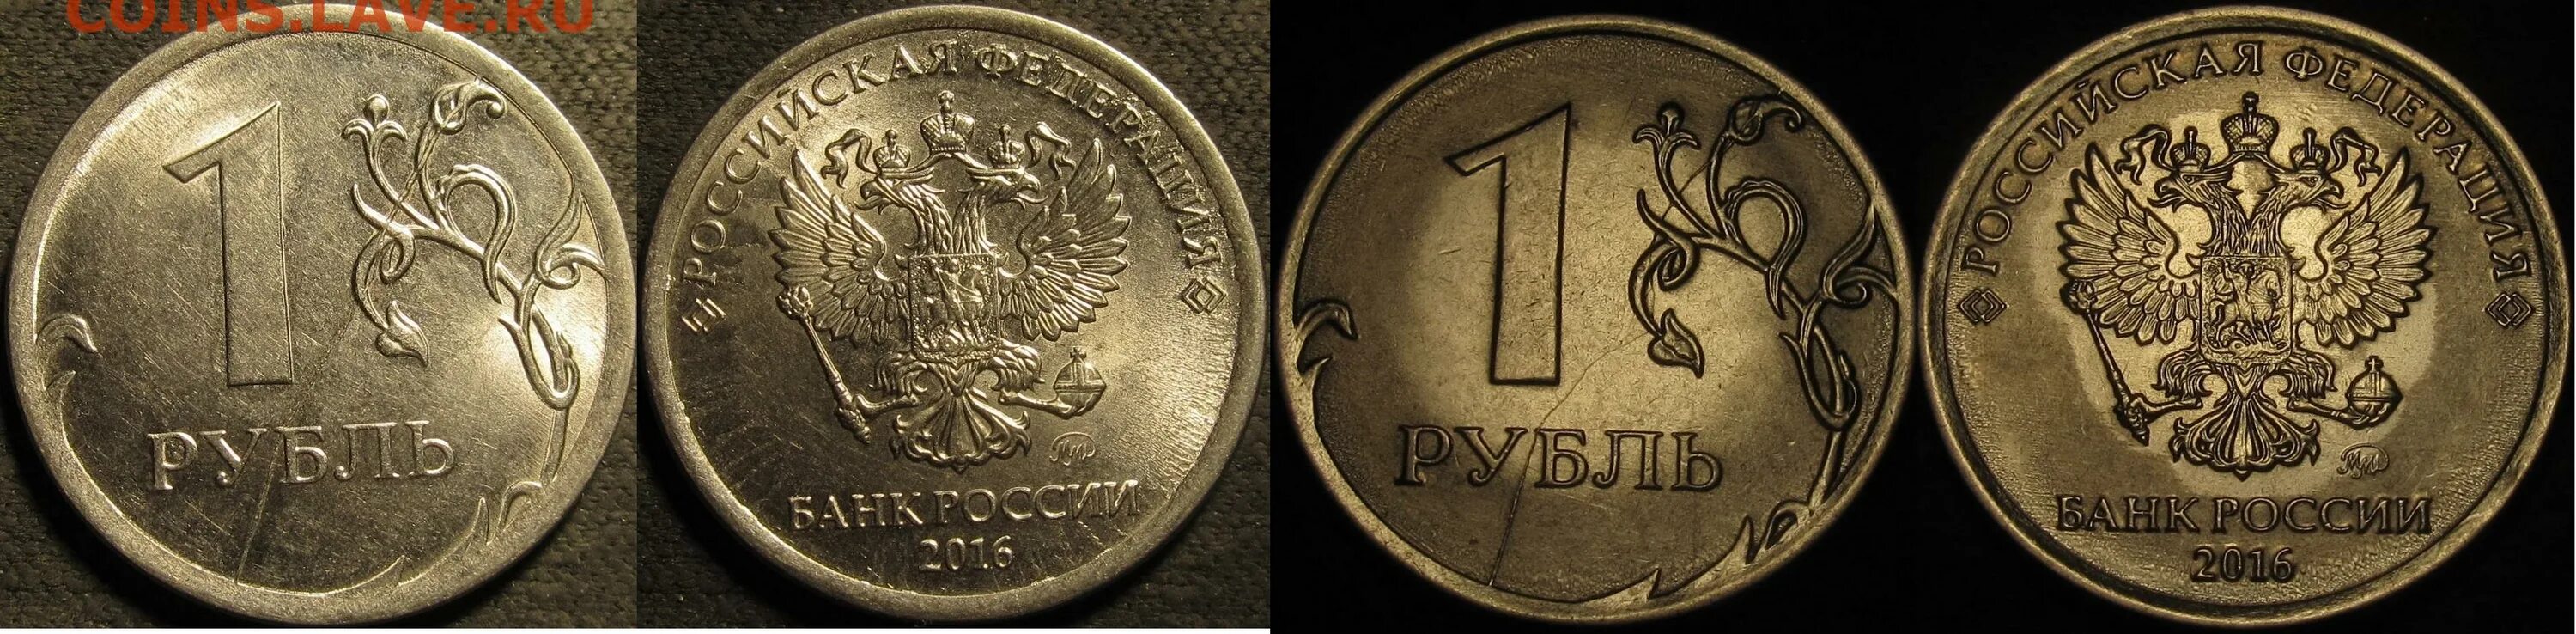 Оценка монет МС 61. 1 Штука 6 рублей.